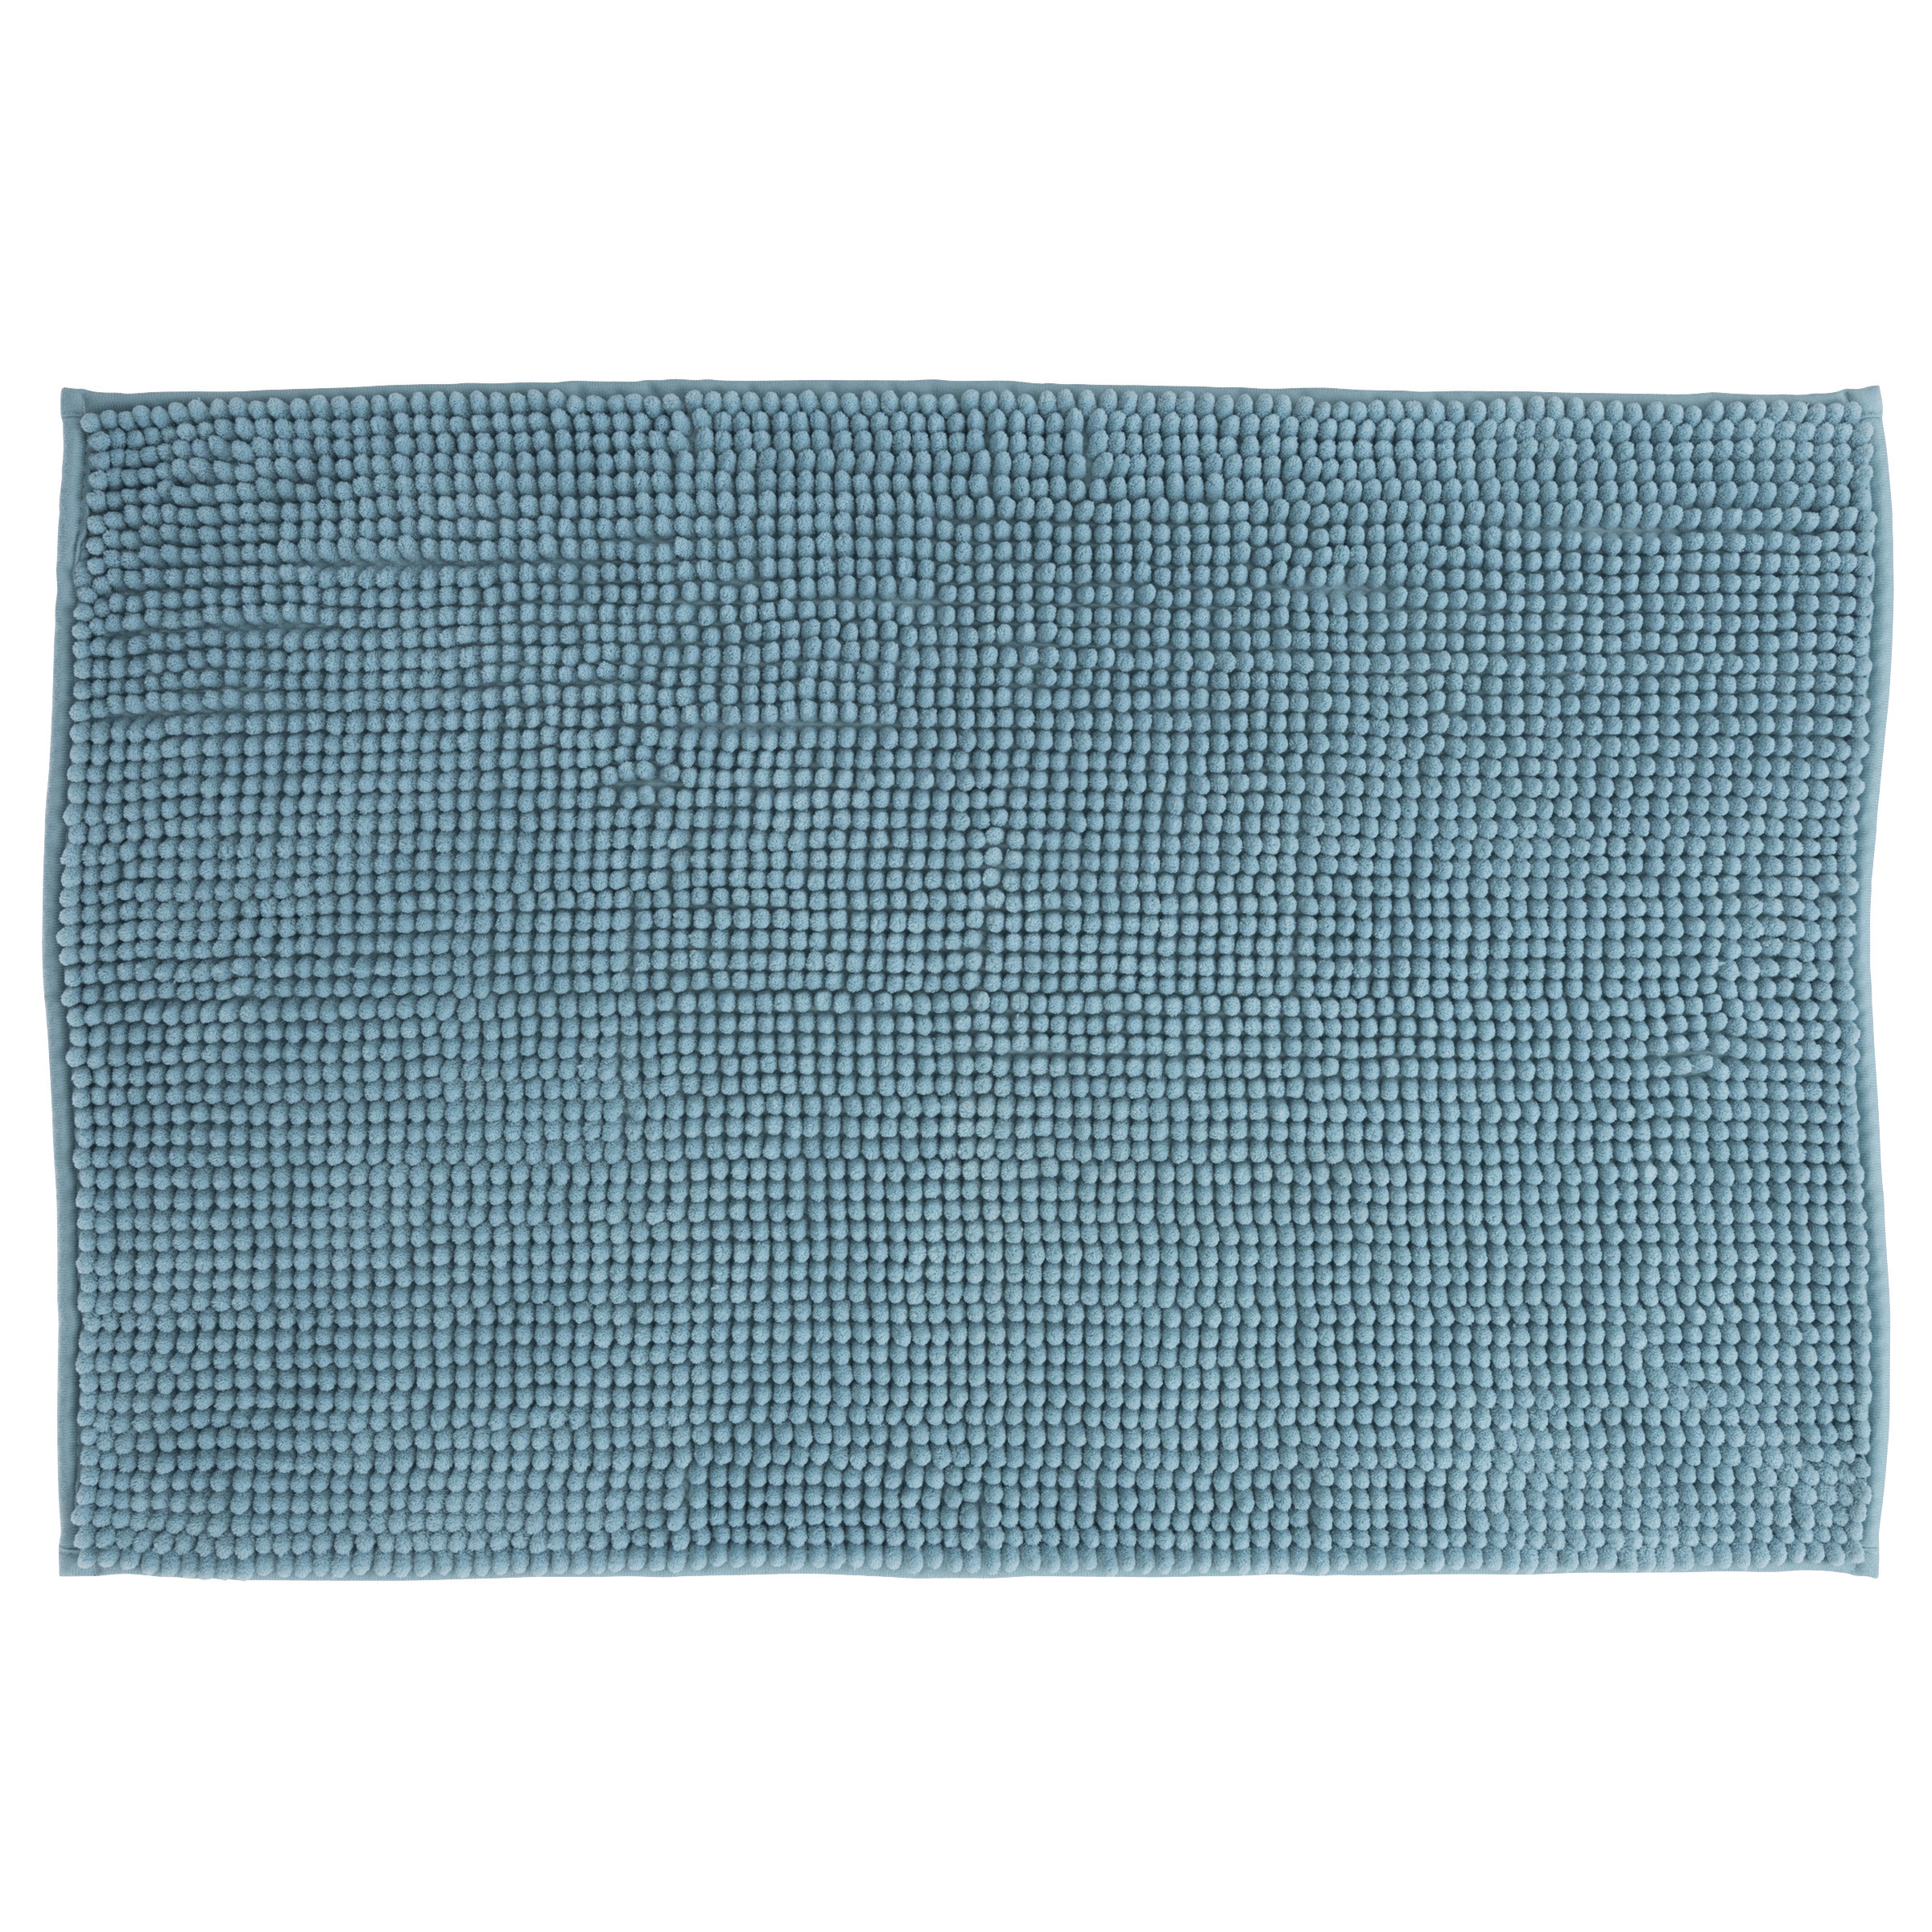 Badkamerkleedje-badmat voor op de vloer lichtblauw polyester-katoen 50 x 80 cm